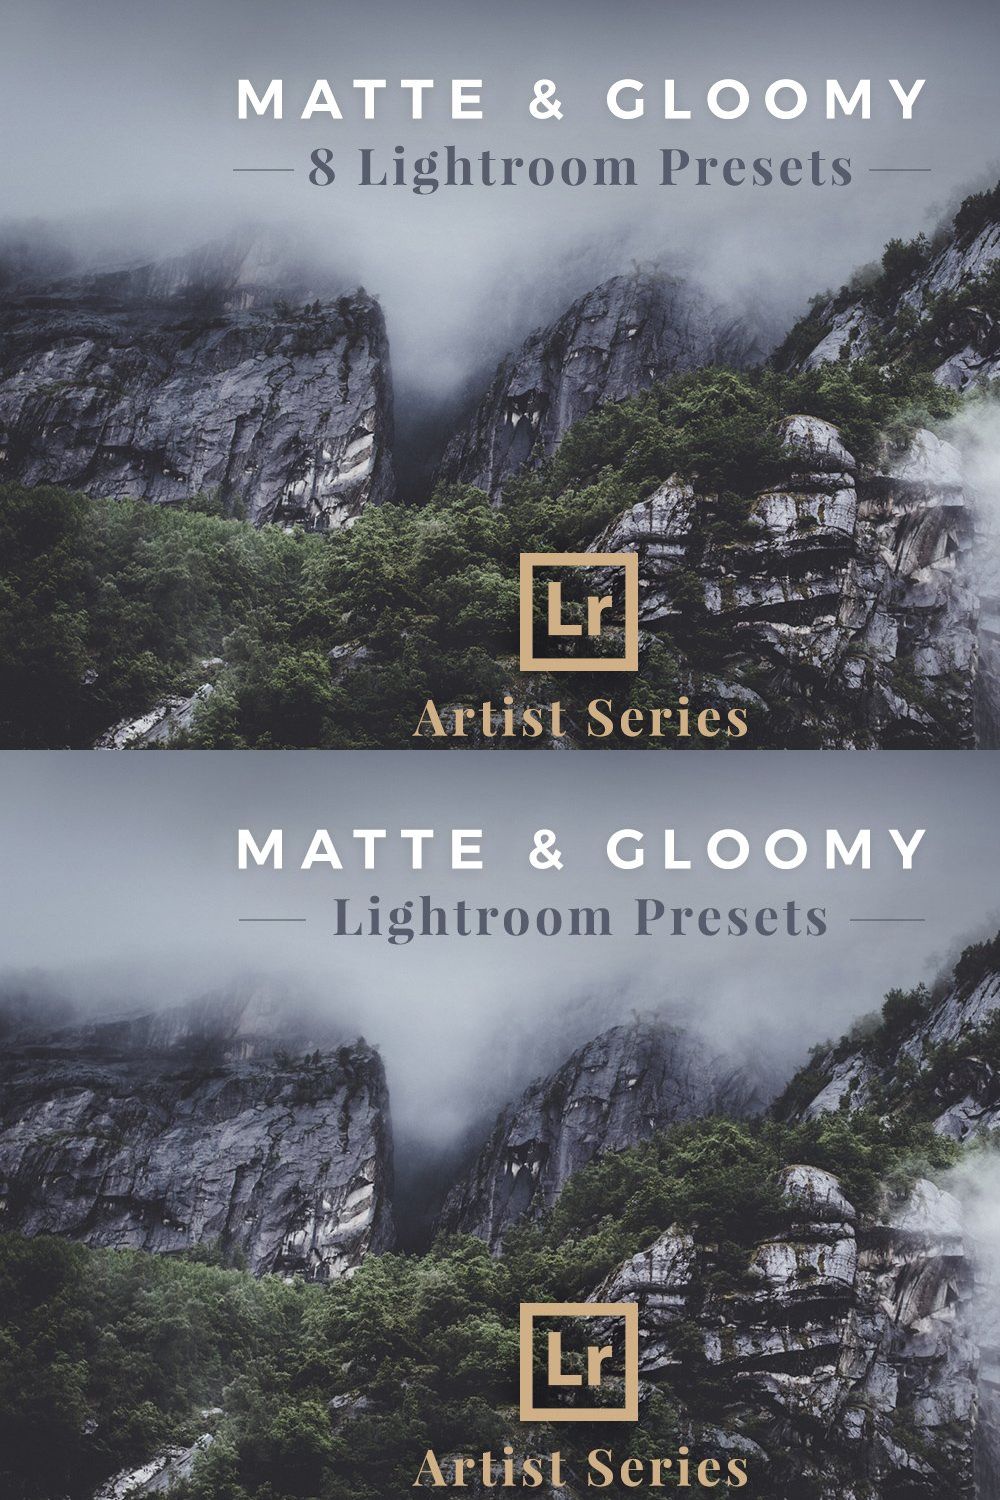 Matte & Gloomy – Lightroom Presets pinterest preview image.